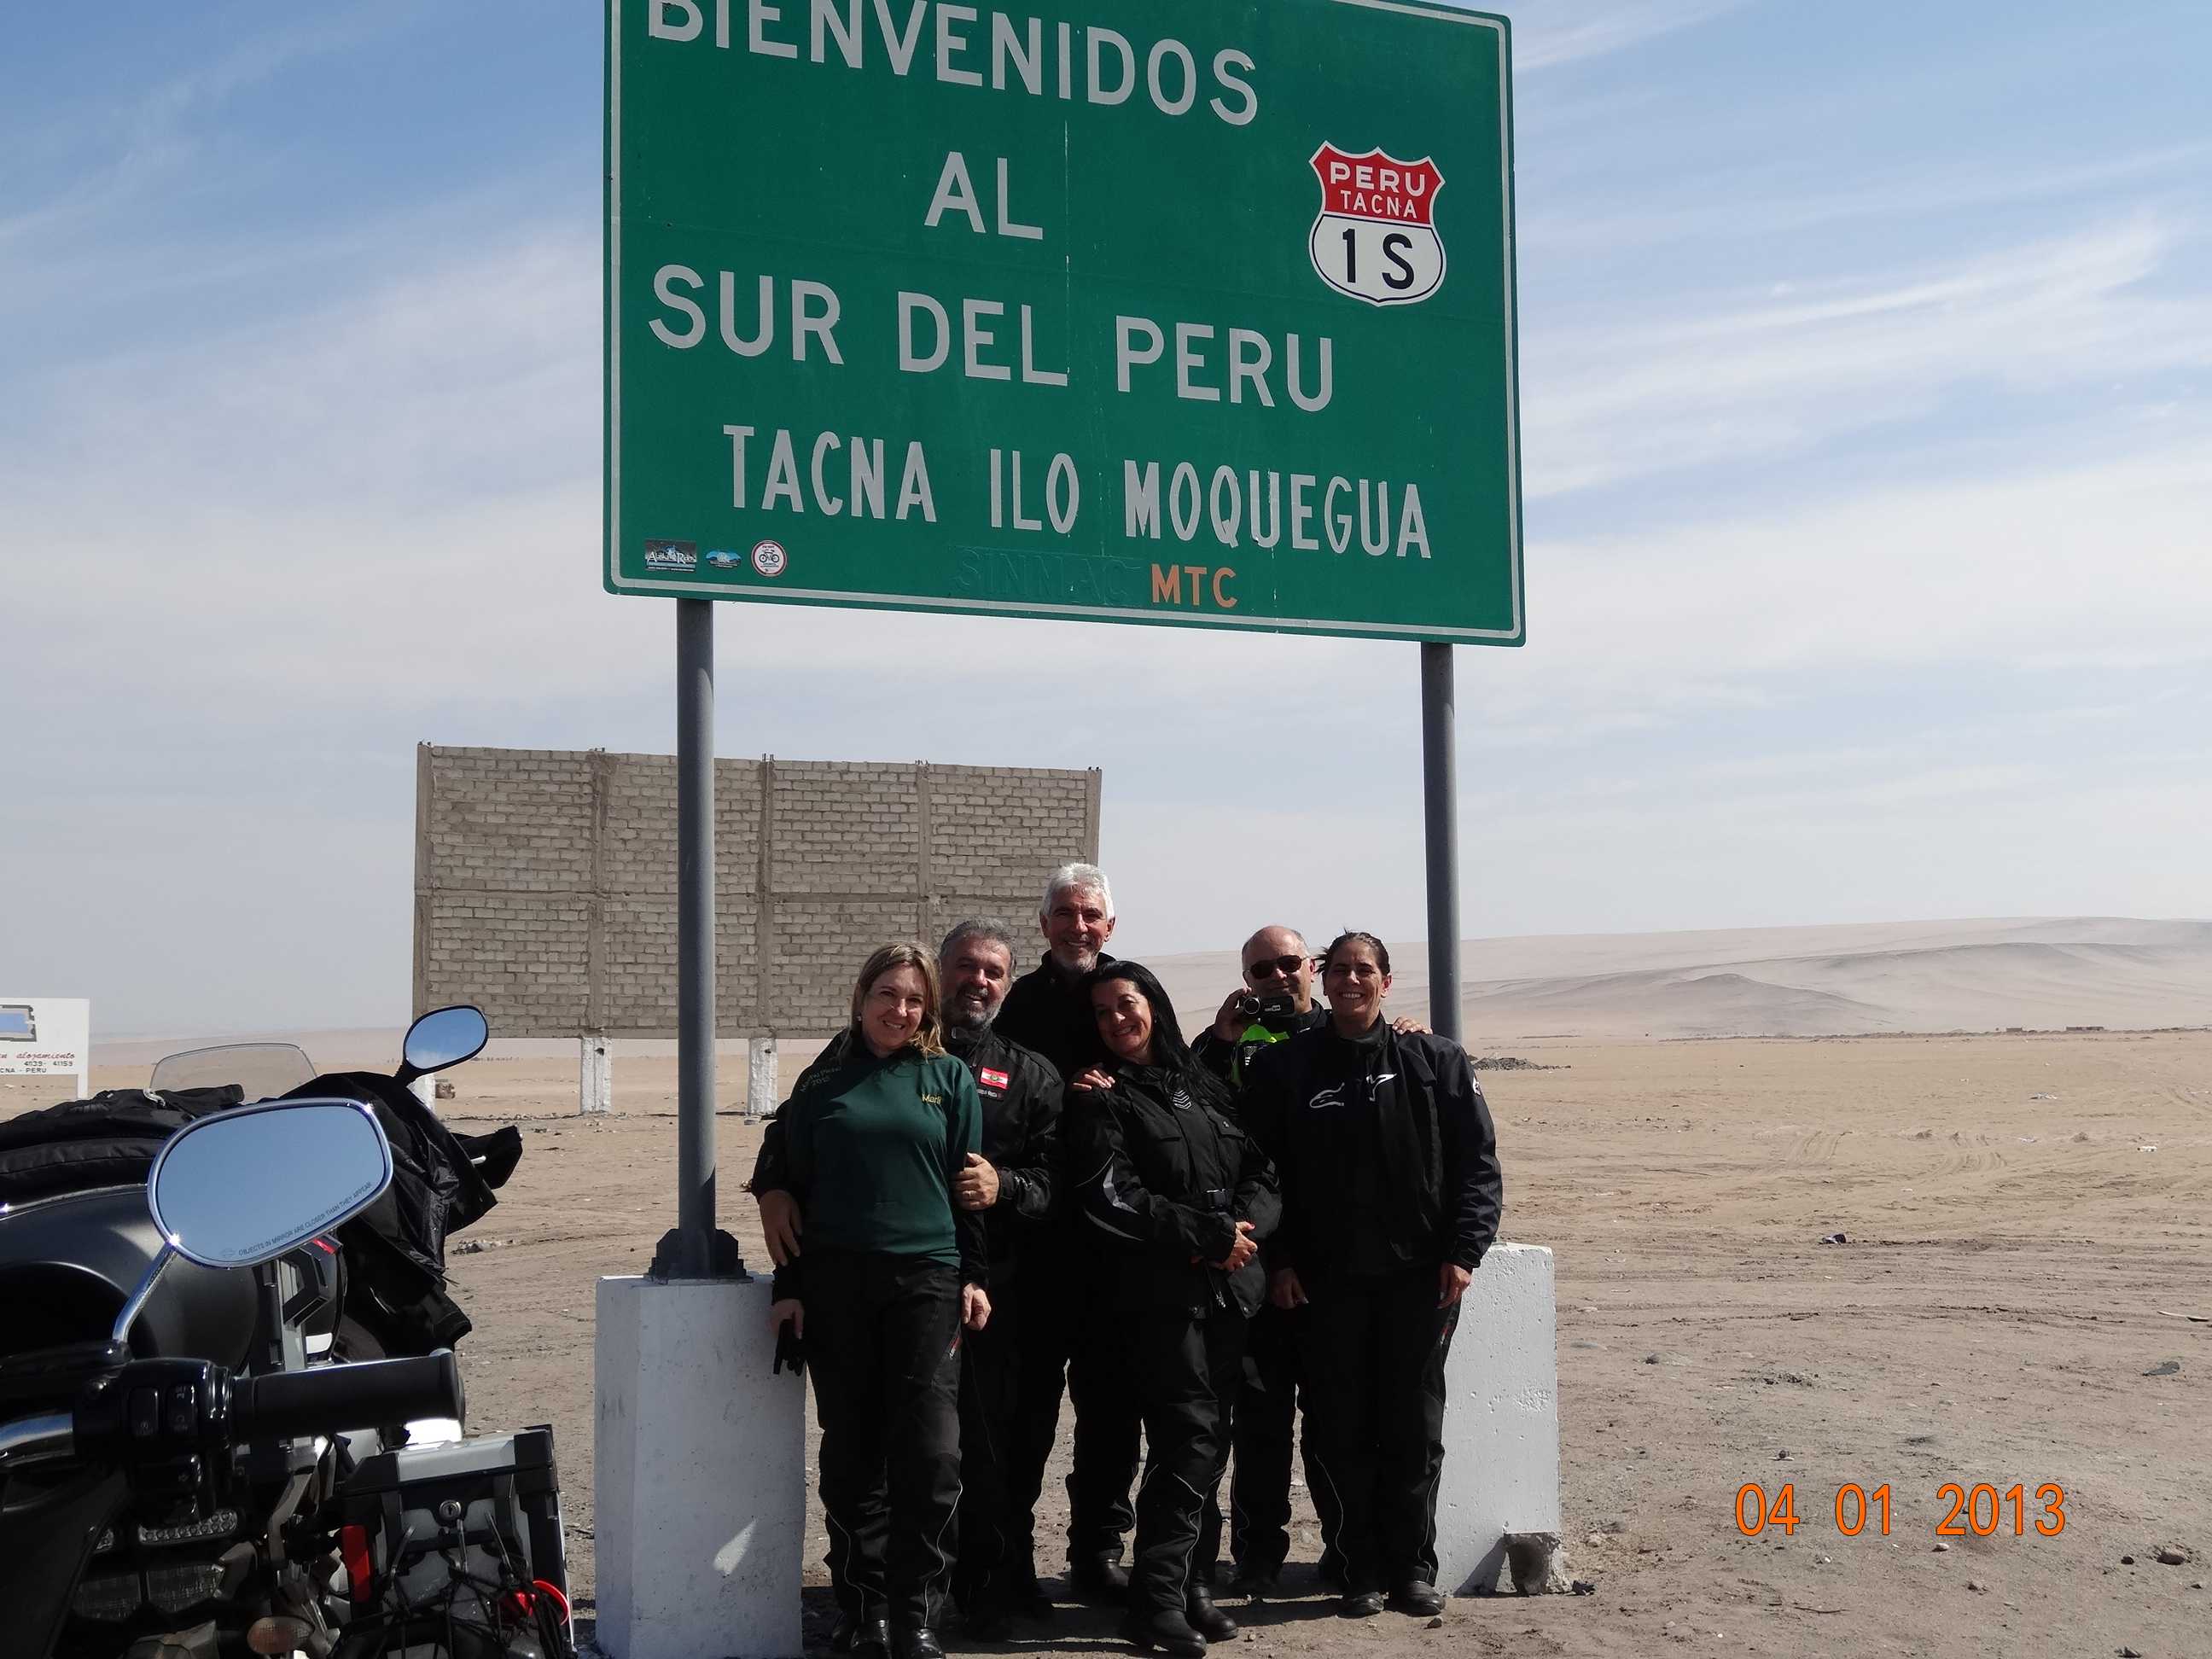 O Grupo já no PERU após Aduana